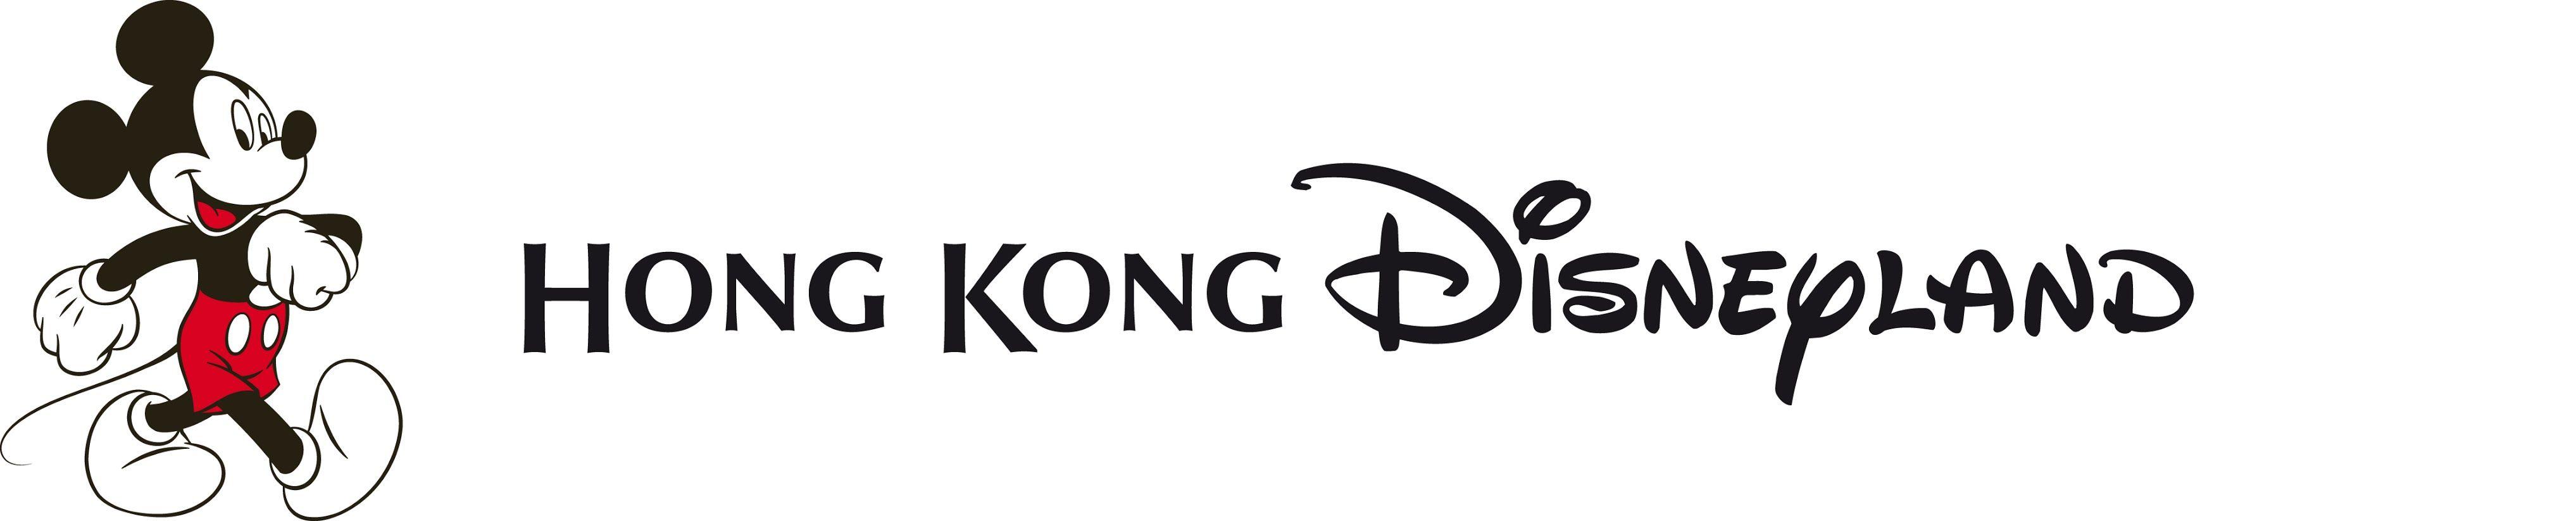 Disneylan Logo - Disneyland hong kong logo flower